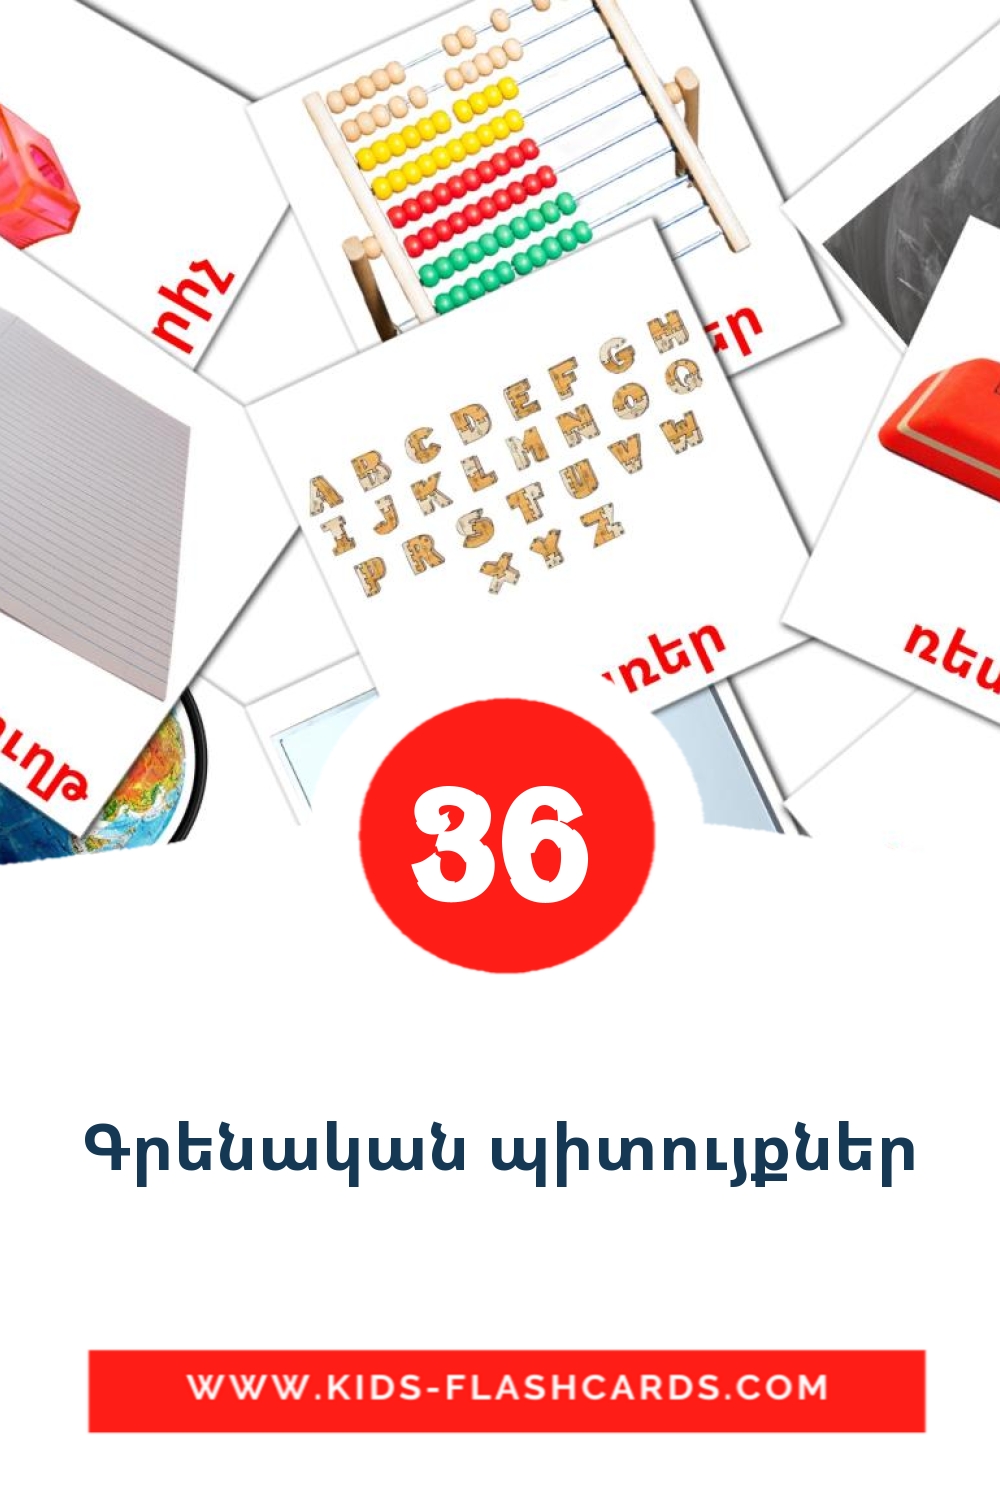 36 Cartões com Imagens de Գրենական պիտույքներ para Jardim de Infância em armênio